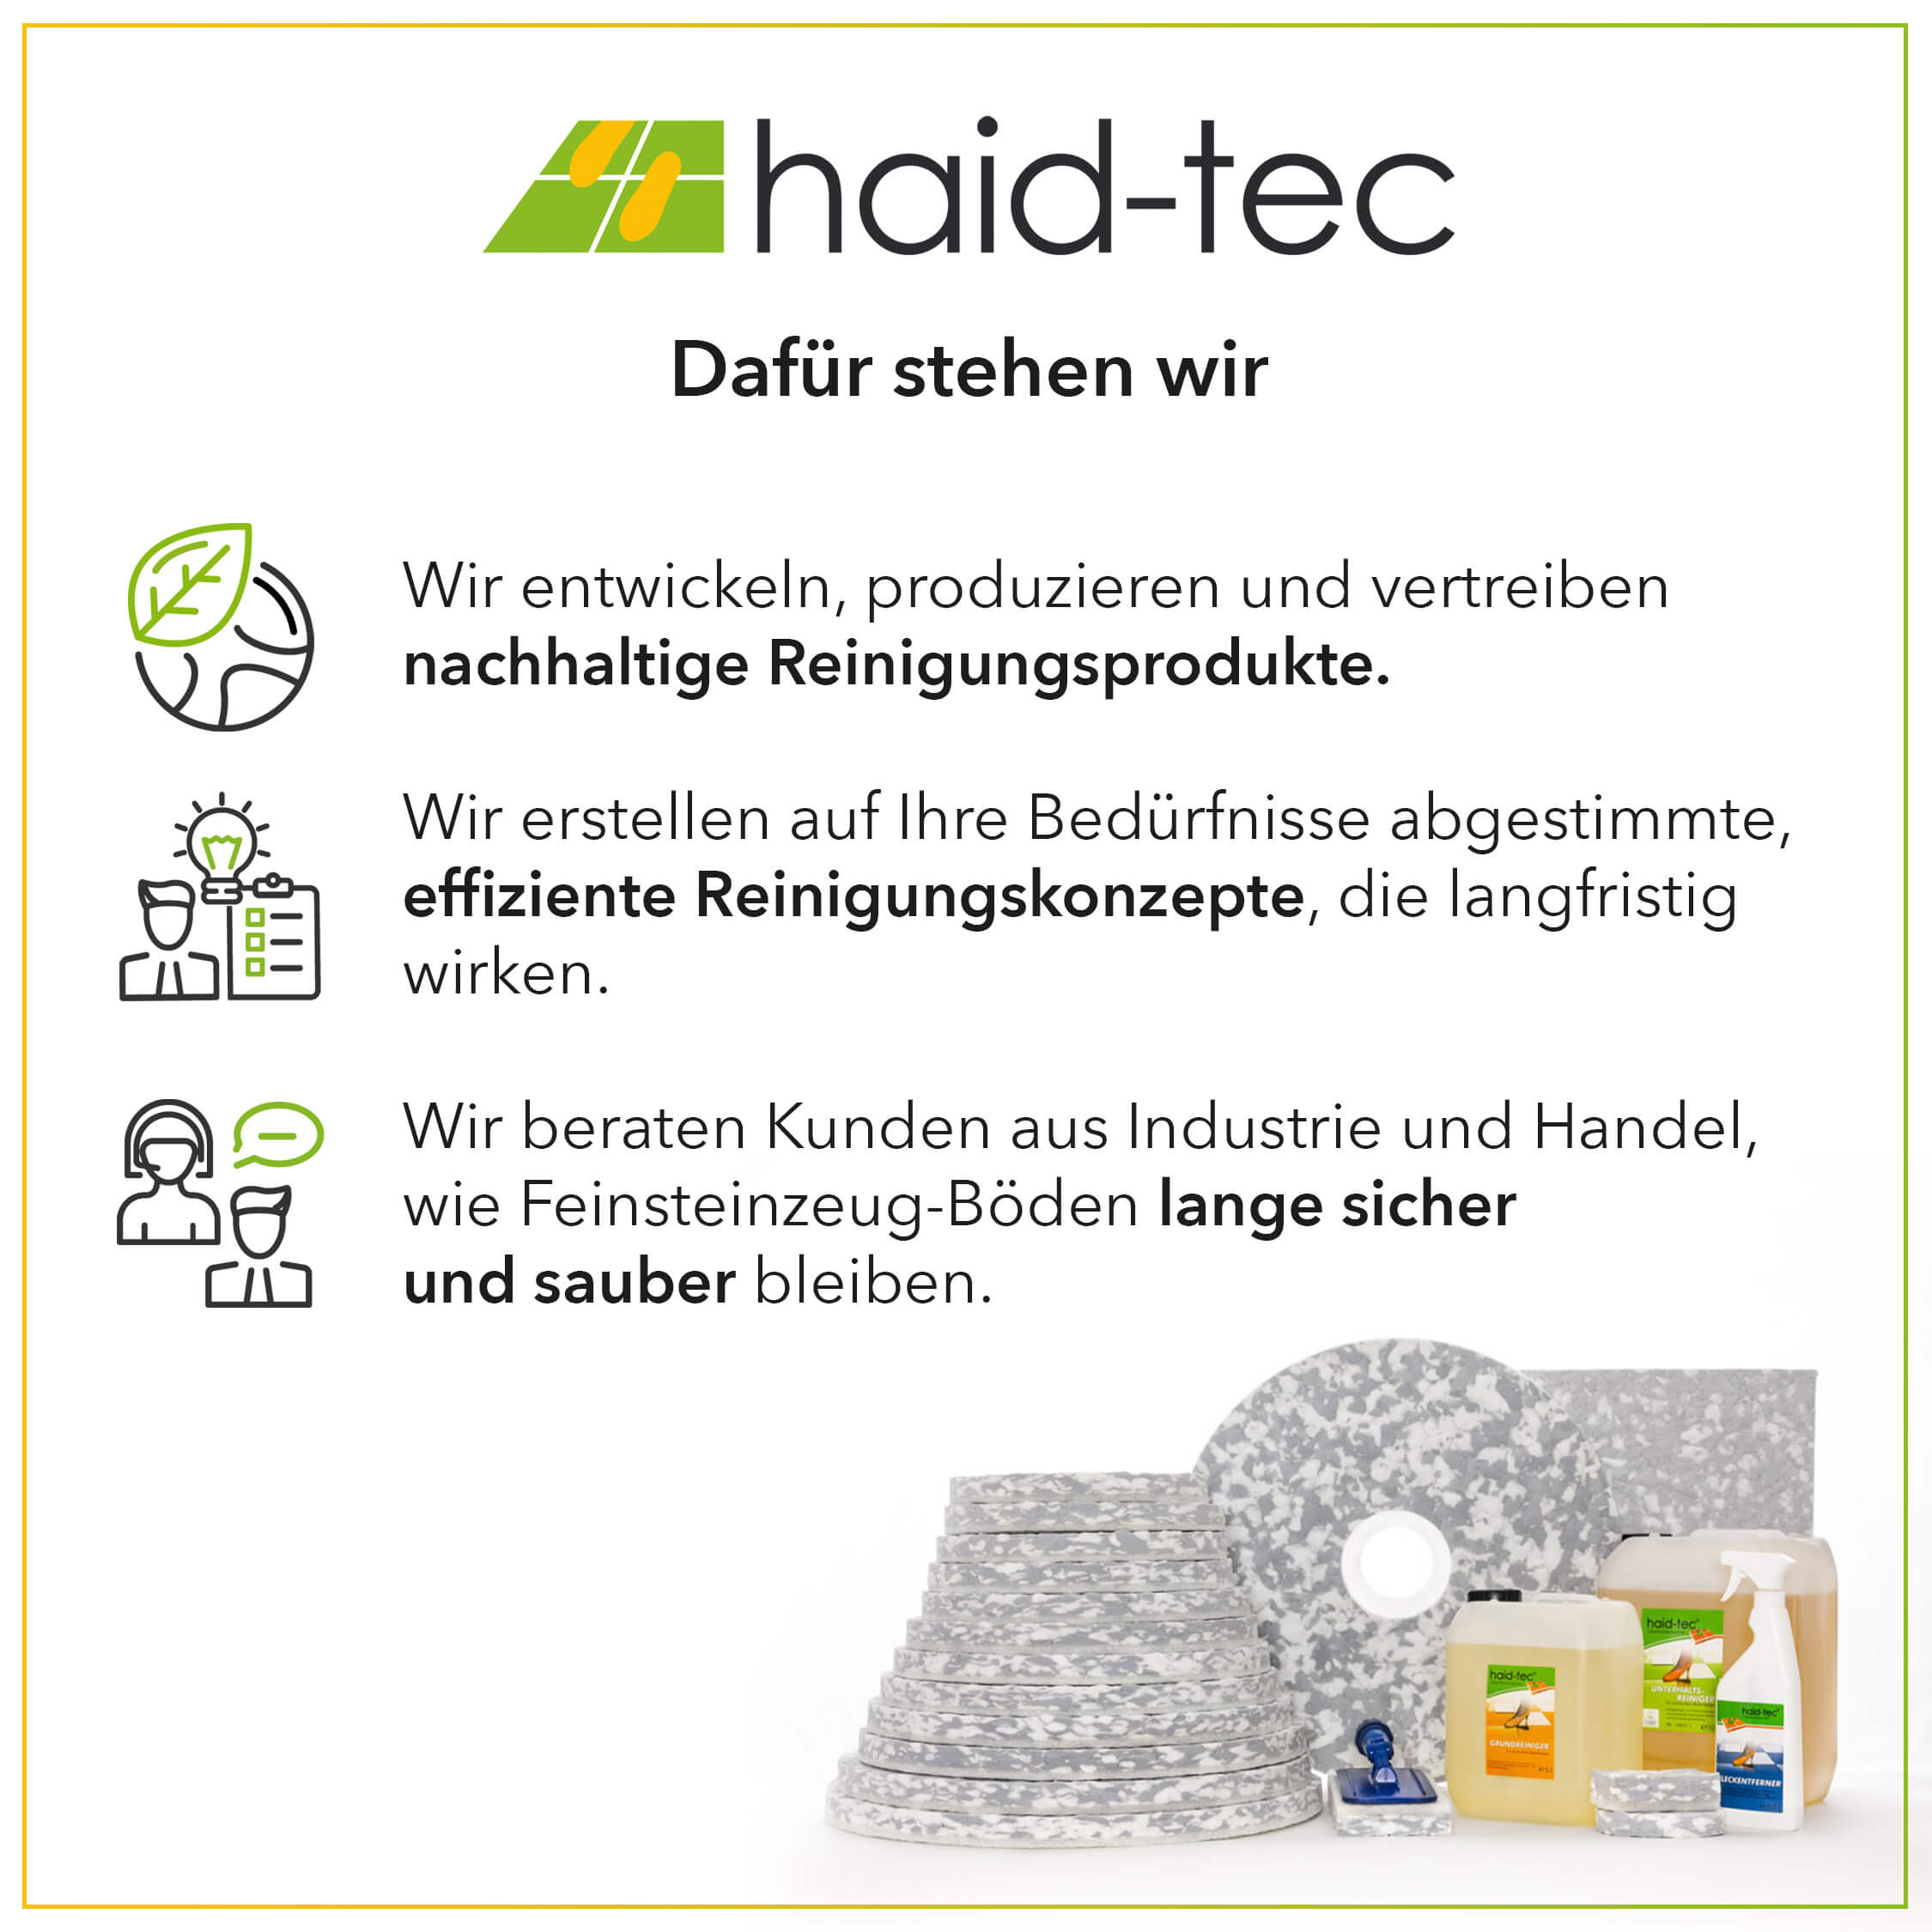 haid-tec Werkstatt Reiniger 10 L, Ölfleckenentferner, Fettfleckenentferner, Industriereiniger - Konzentrat - biologisch abbaubar - made in Germany 